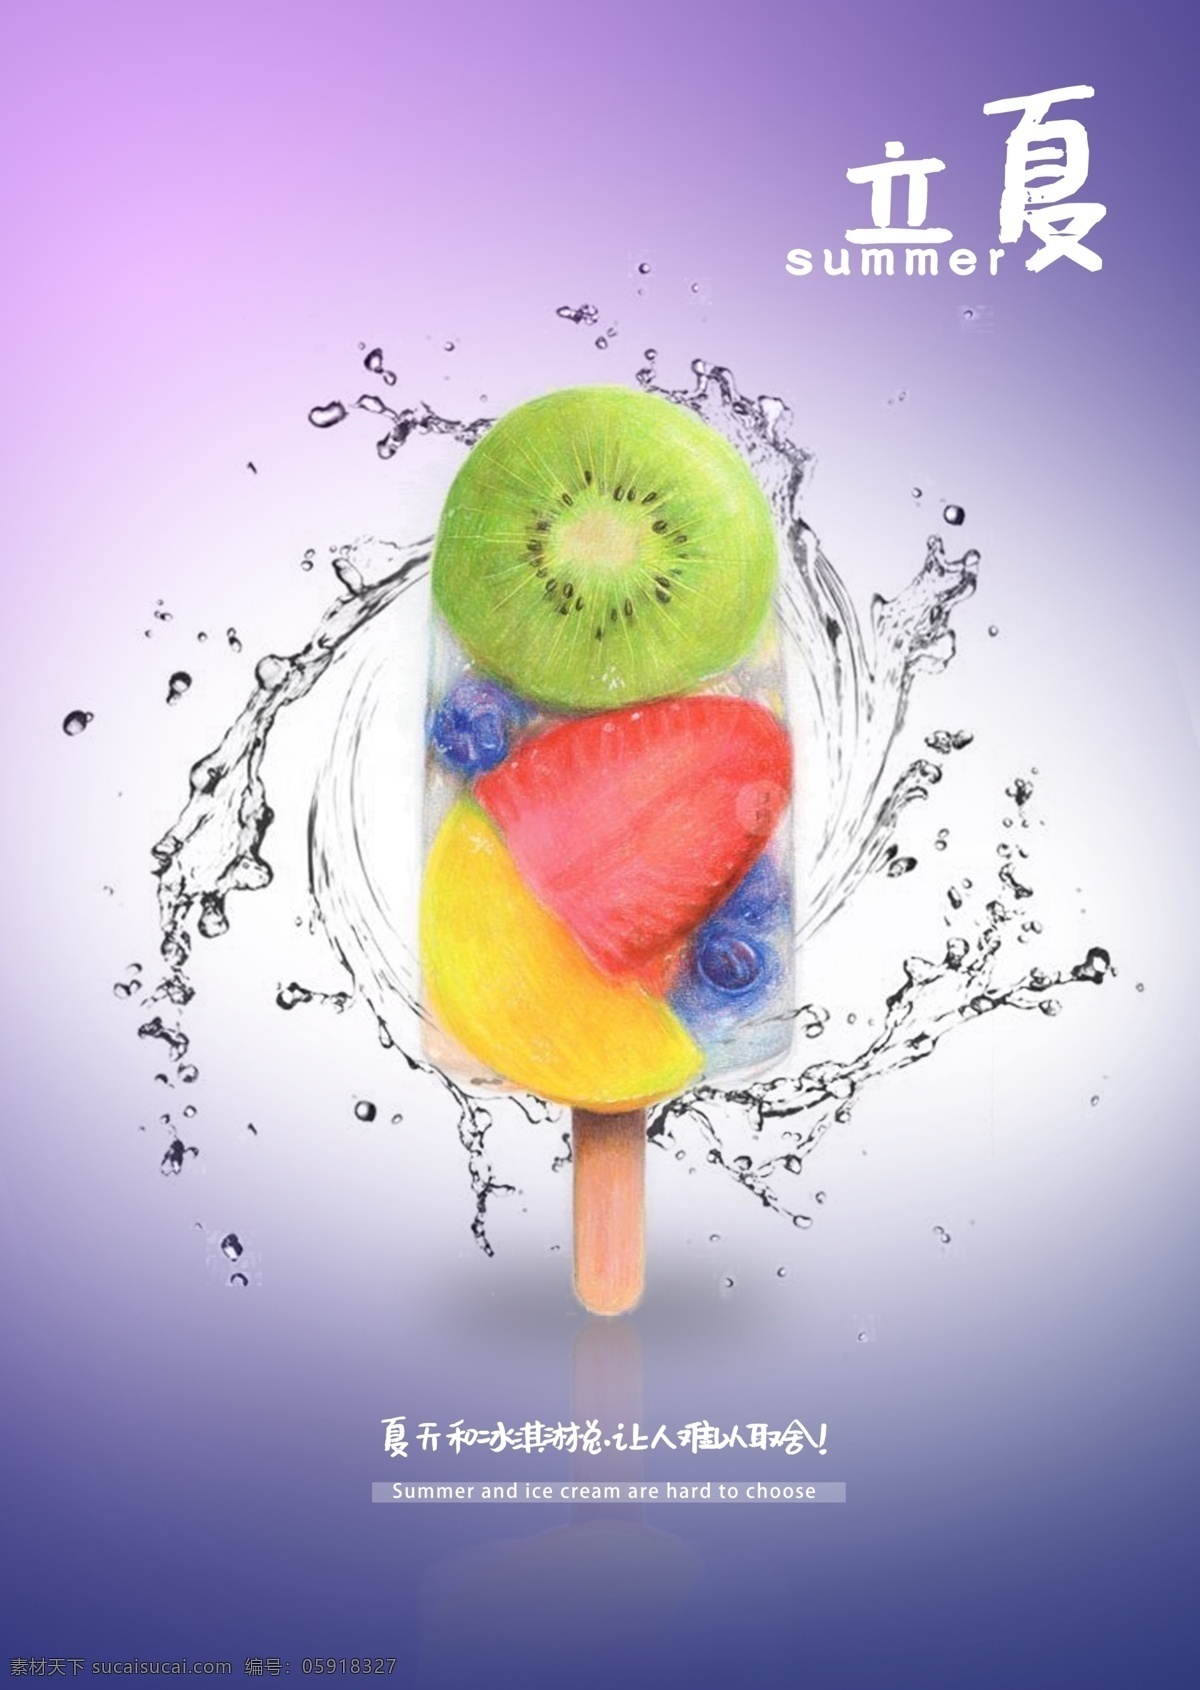 立夏 夏天 冰淇淋海报 凉爽 冰淇淋 水果 内含三款 夏天海报